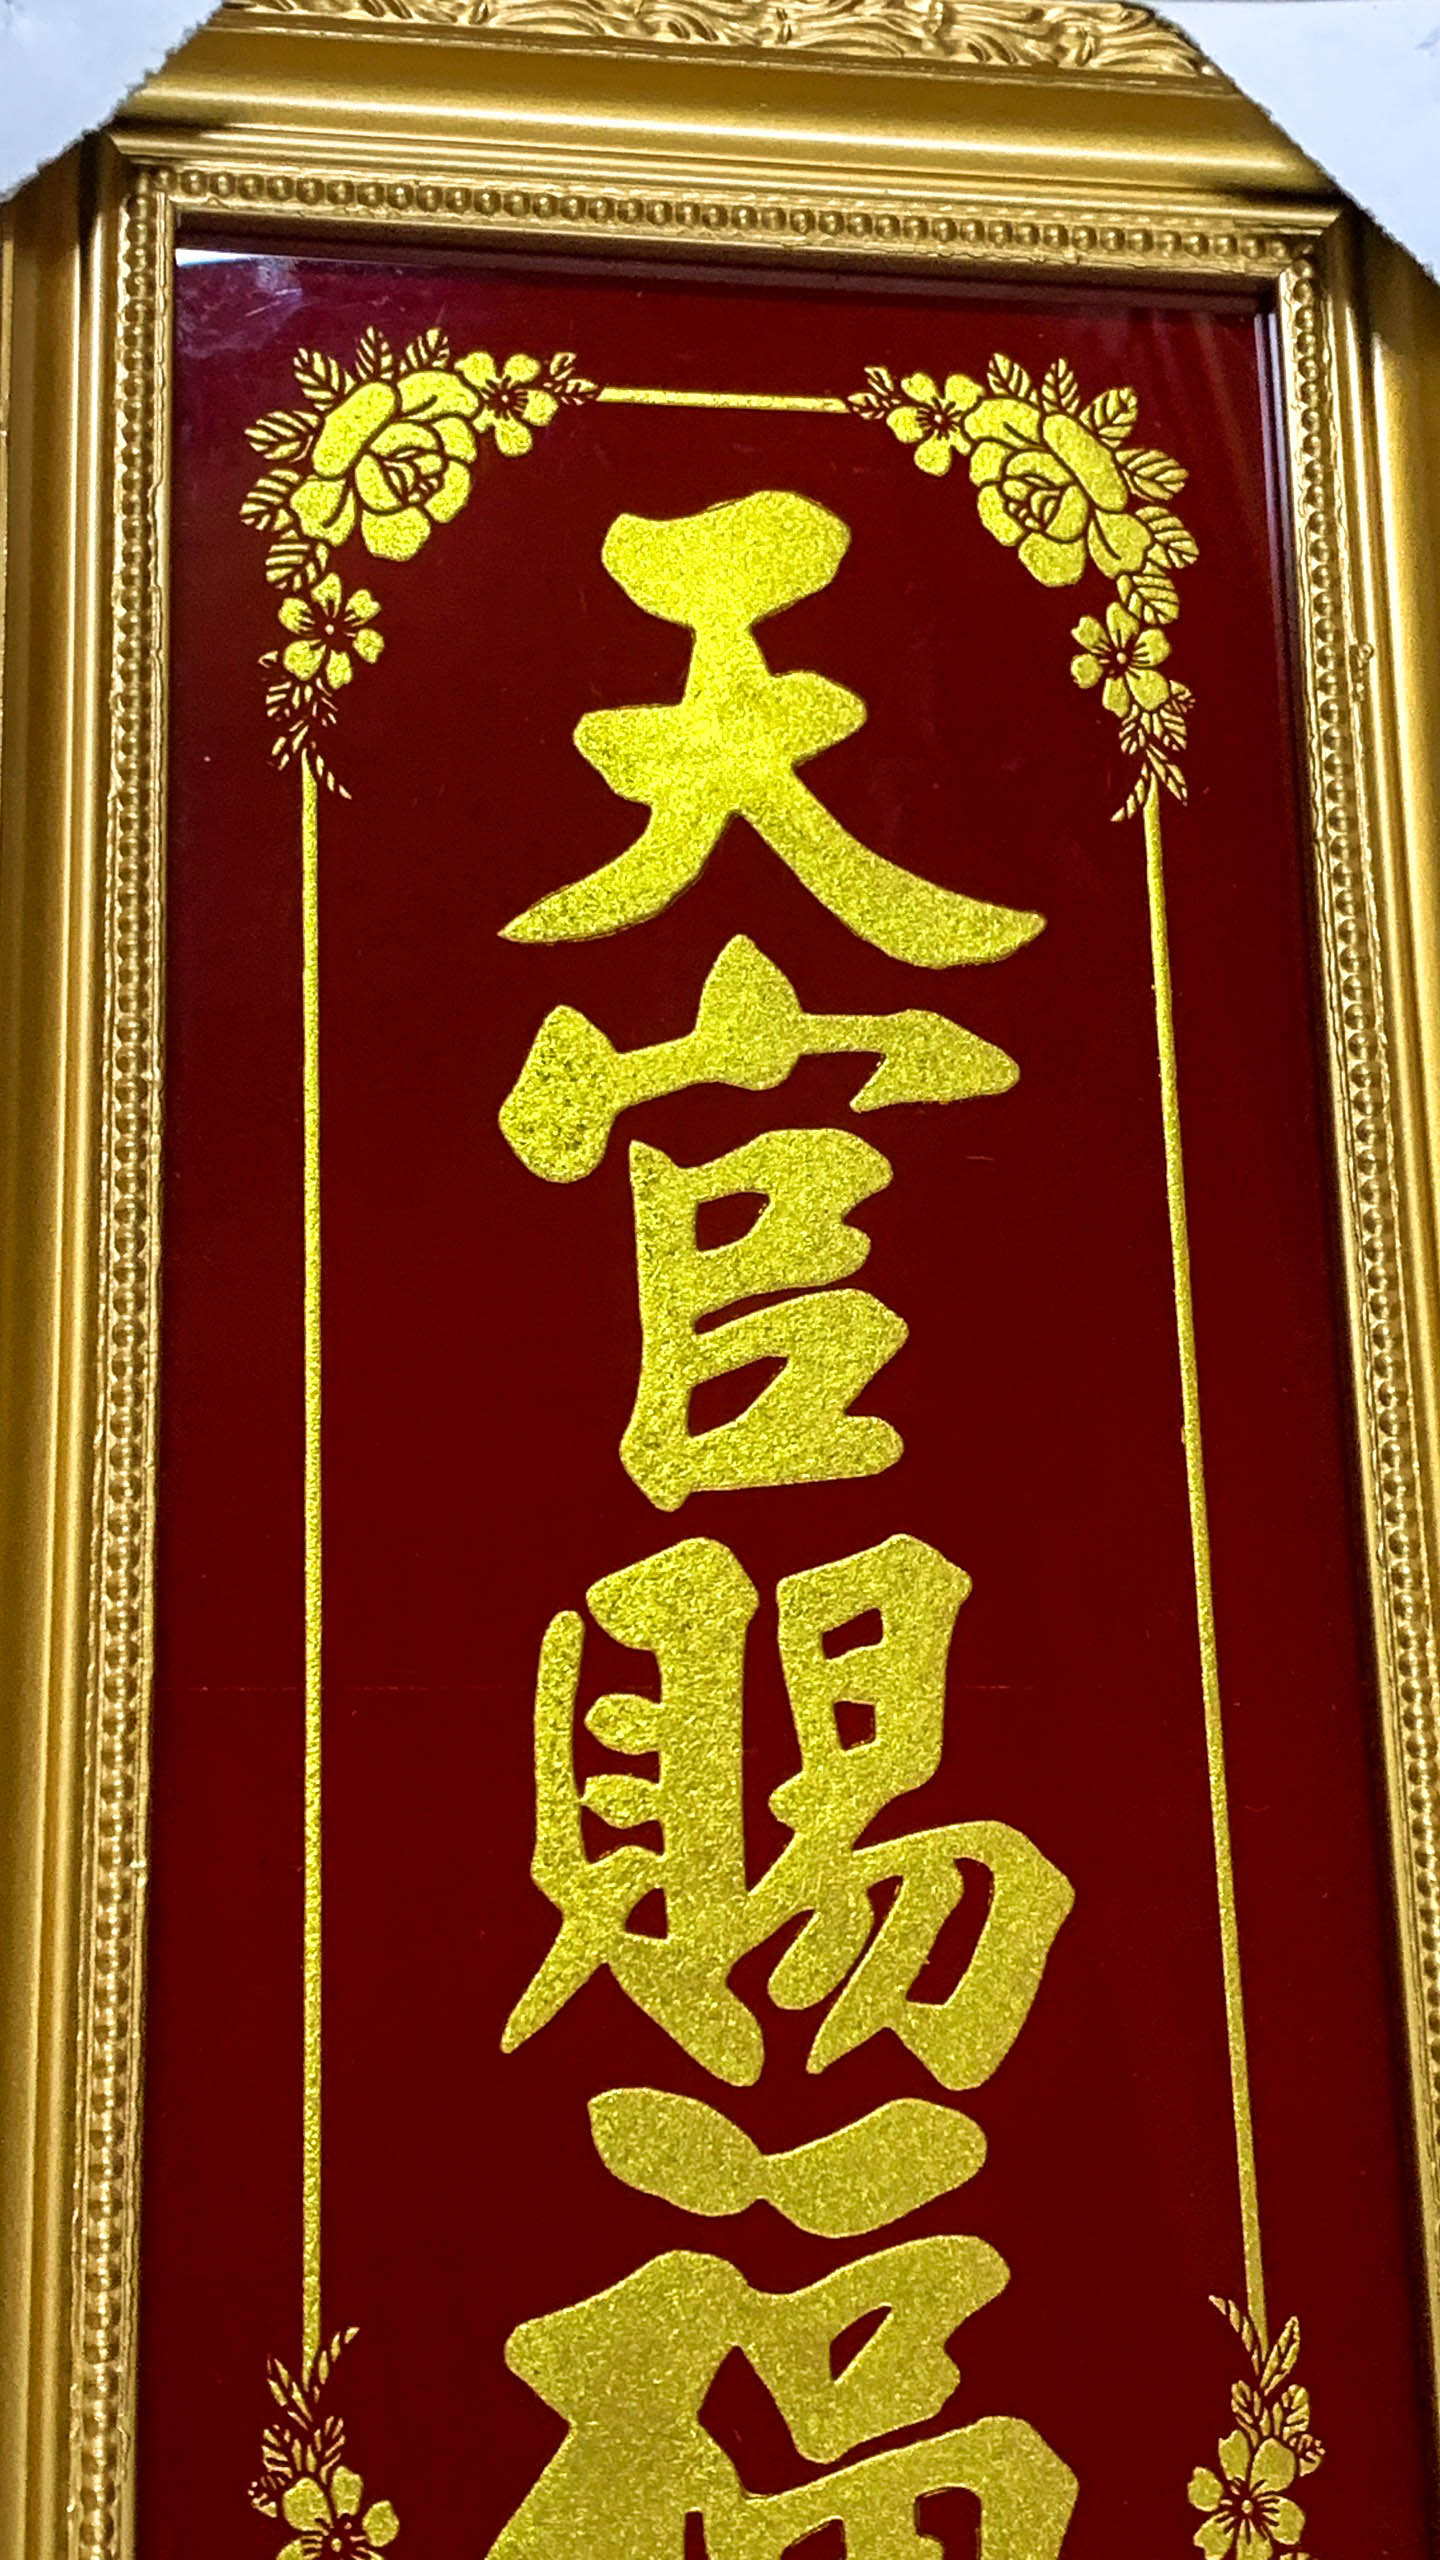 Bài vị thờ ông Táo khắc chữ Vàng - nhũ kim sa - Khung Gỗ - Cao 38cm Ngang 20cm (sản phẩm thủ công